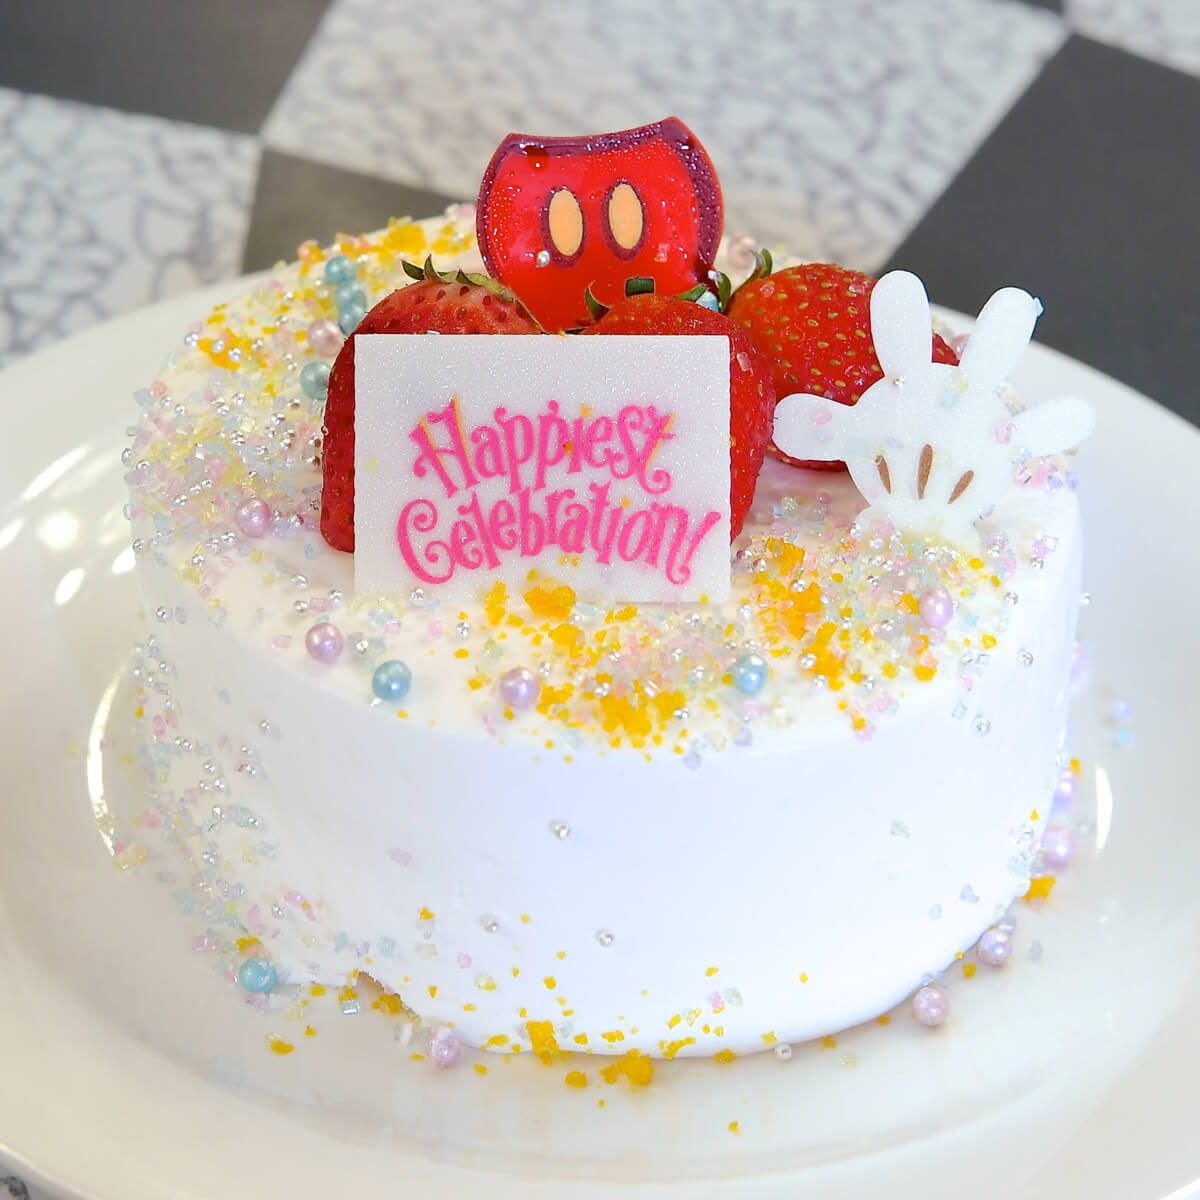 35周年をホールケーキでお祝い 東京ディズニーリゾート35周年 Happiest Celebration スペシャルケーキ